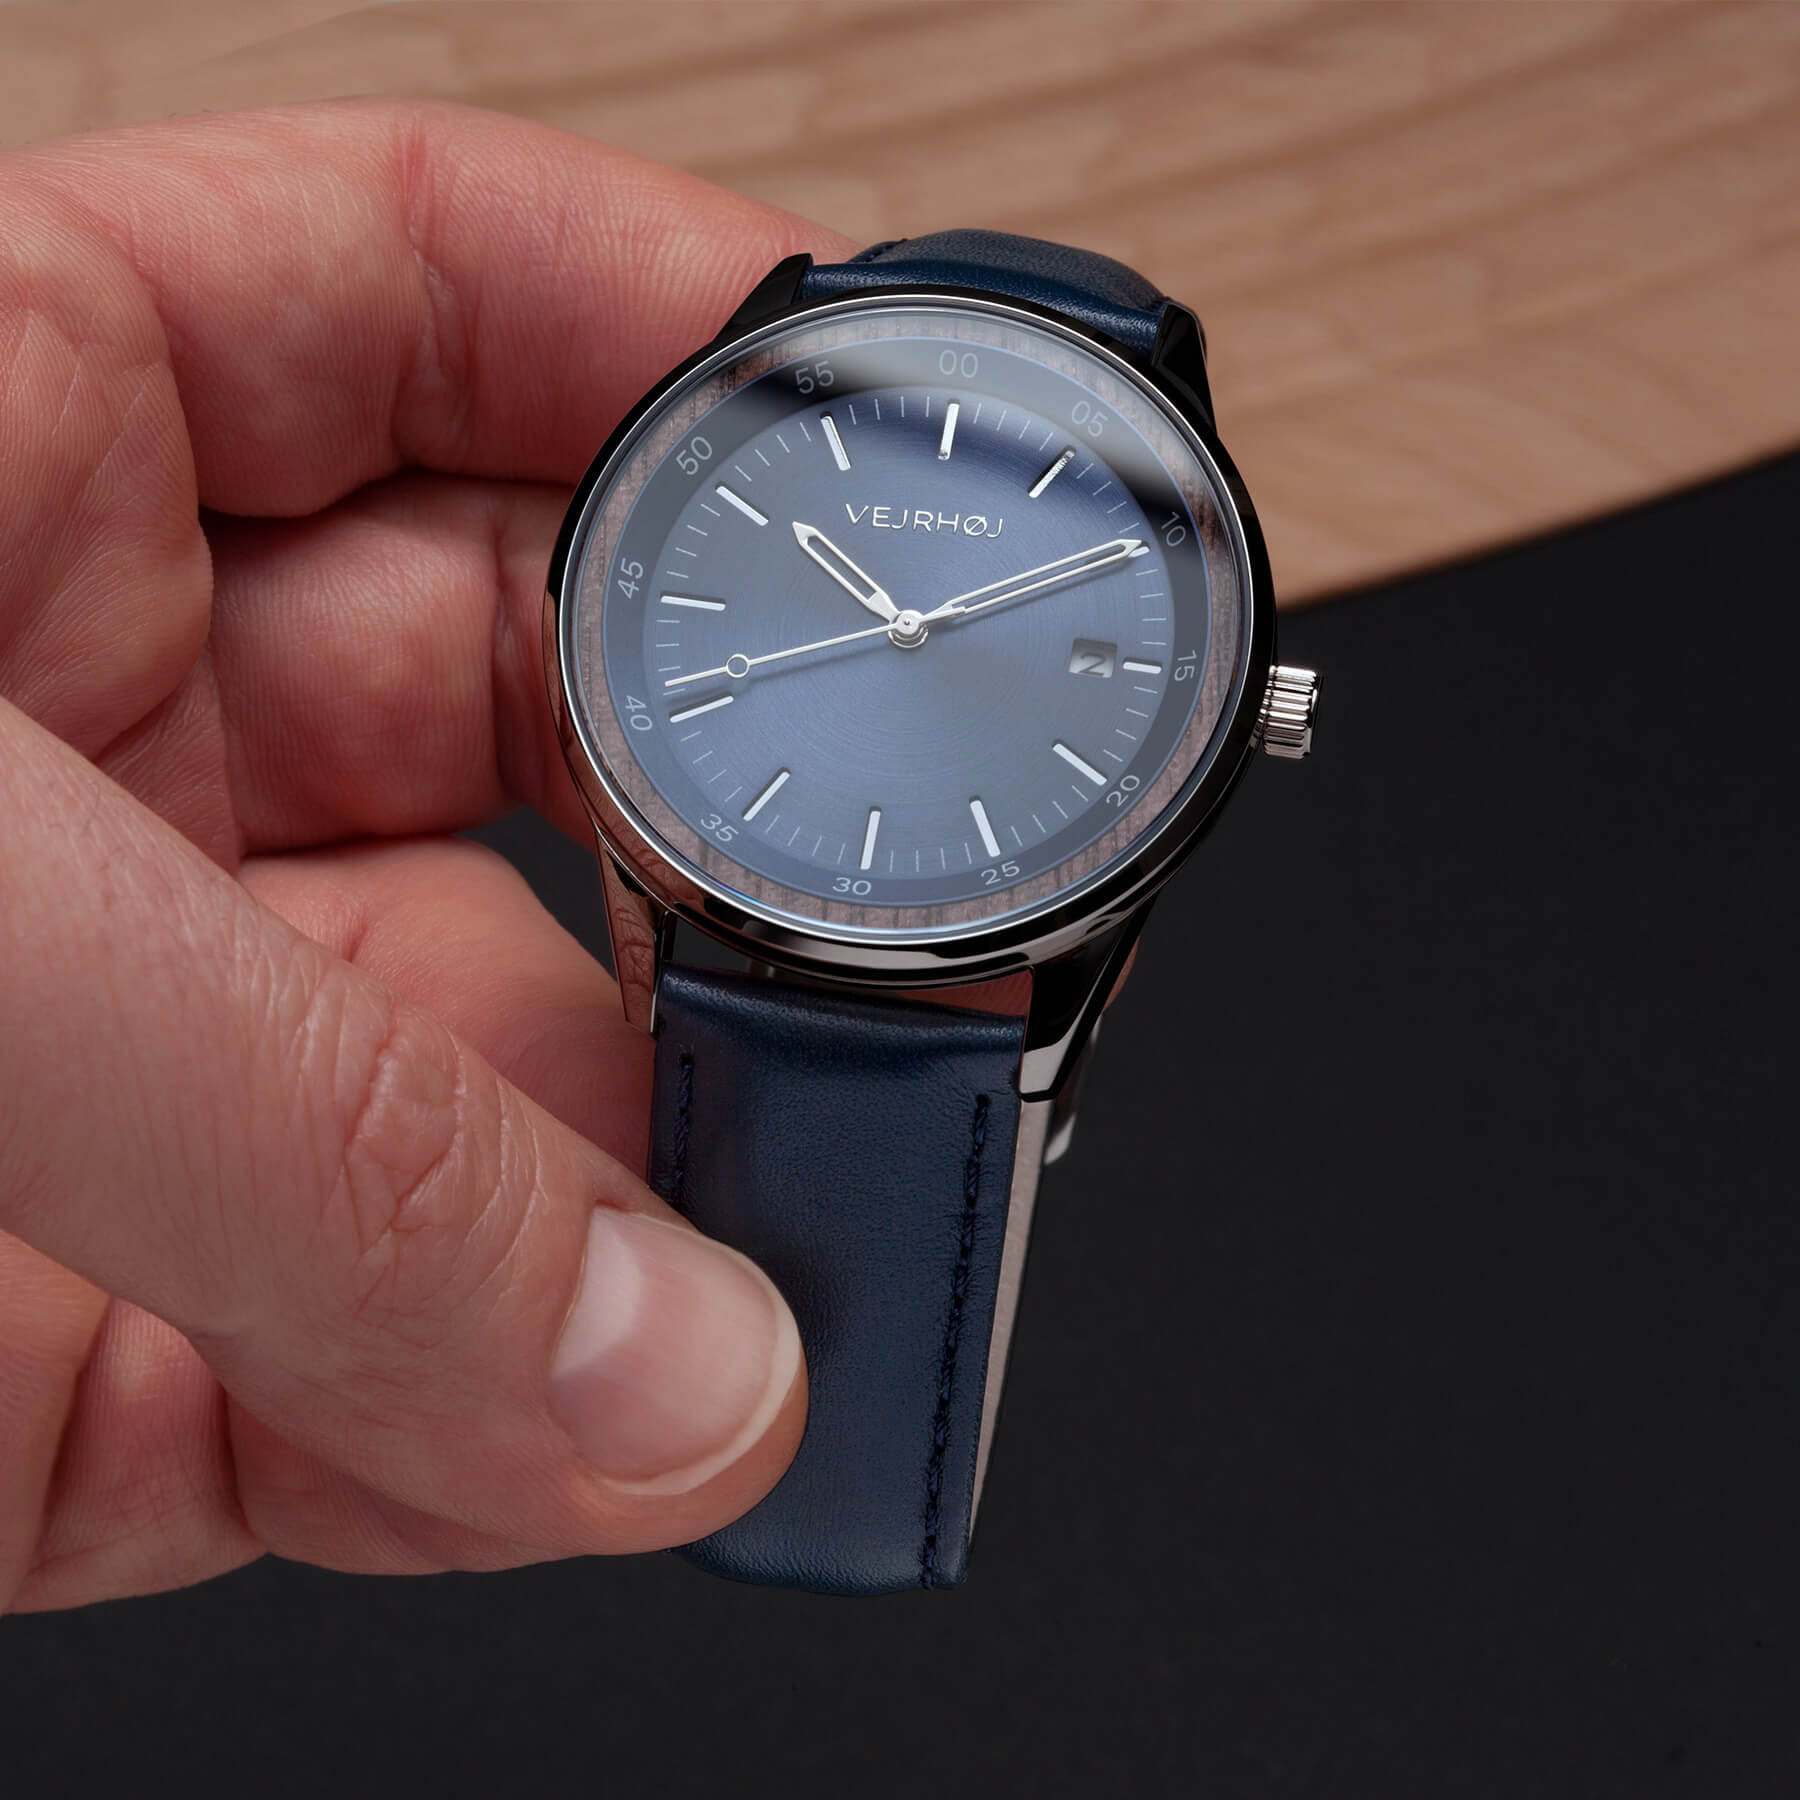 手が文字盤の青く、針のシルバー色の機械式腕時計を持って見せている。文字盤が木の輪で囲まれている